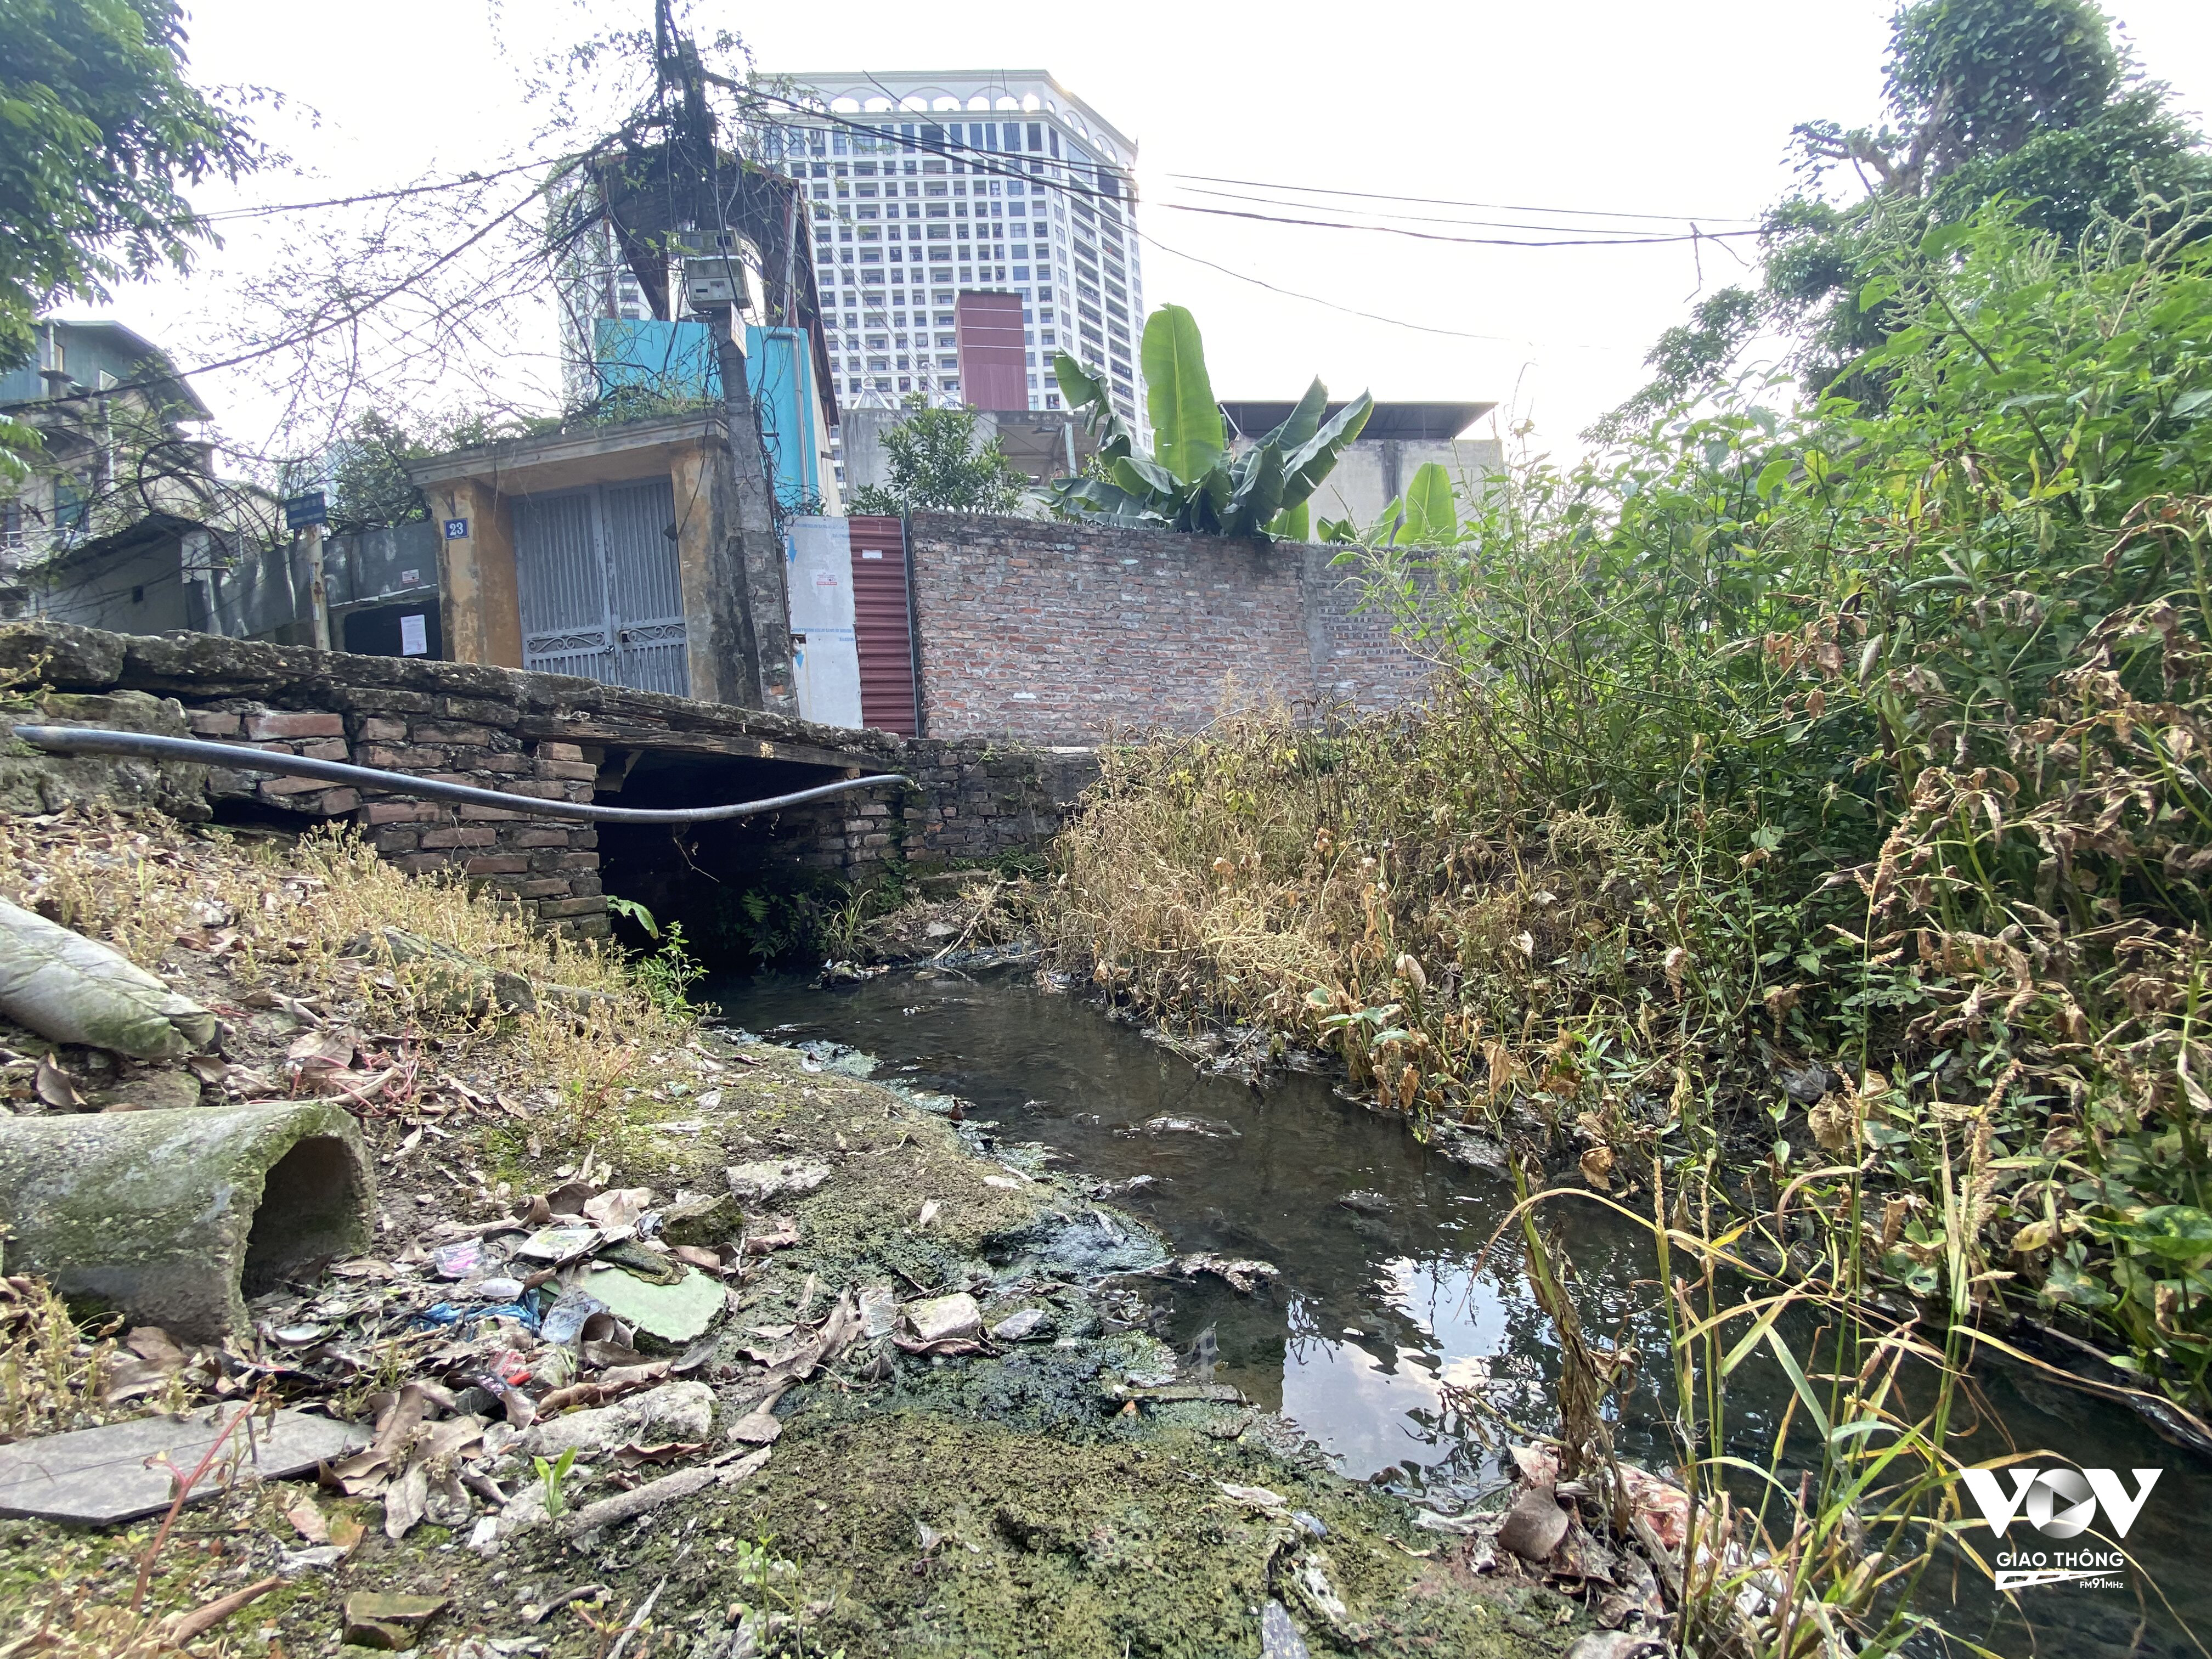 Với lòng cống chỉ khoảng 60cm nhưng hàng ngày chảy qua đây là một khối lượng nước thải không hề nhỏ, ảnh hưởng đến môi trường, đời sống của người dân ở khu dân cư số 31, phường Vĩnh Hưng, quận Hoàng Mai, Hà Nội